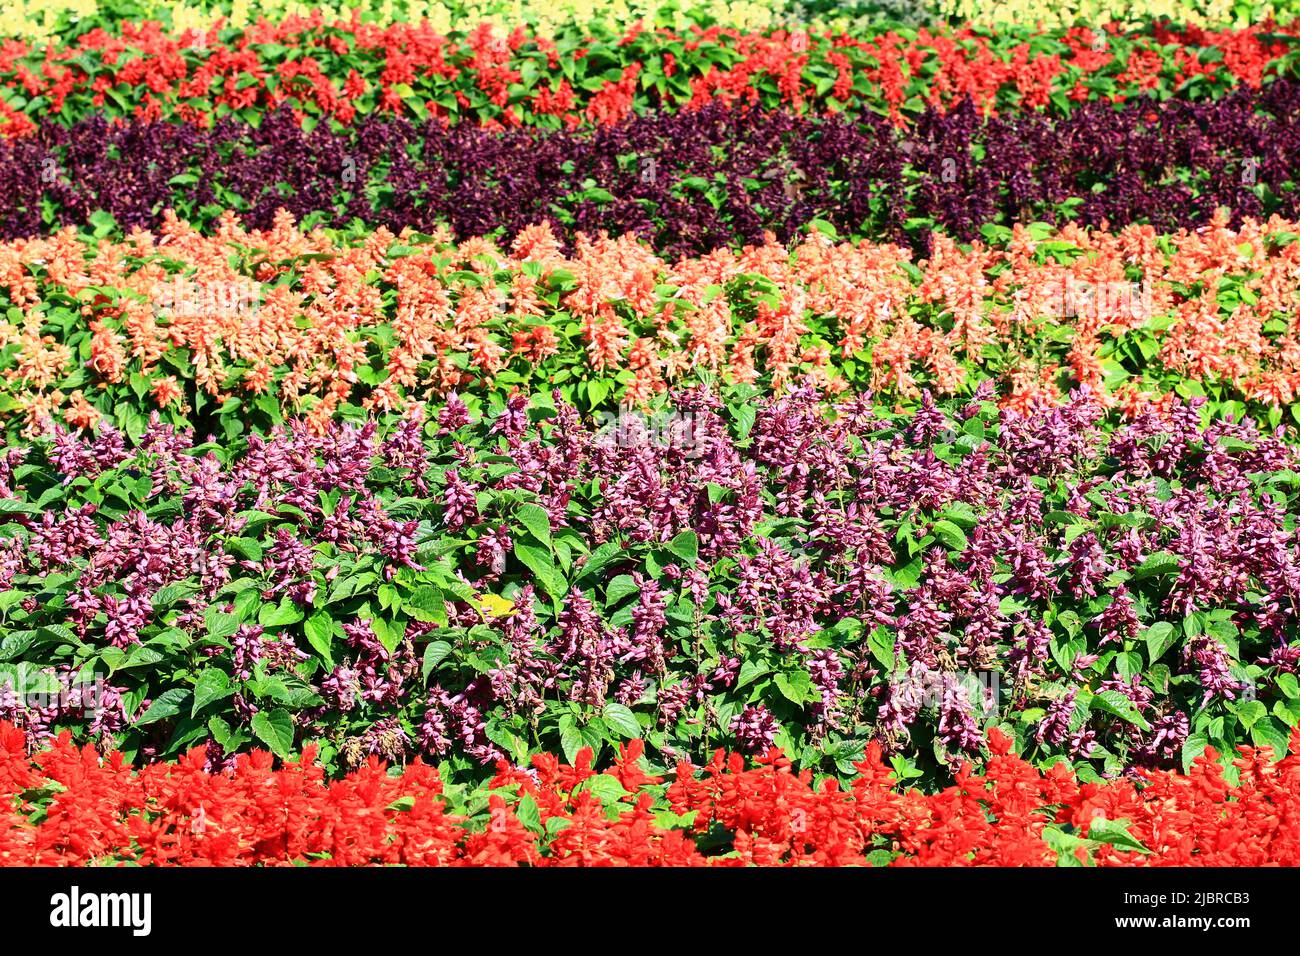 Bellissimo scenario di fioritura Scarlet Sage (Redstring, Tropical Sage) fiori, molti fiori rossi e viola che sbocciano in giardino in una giornata di sole Foto Stock